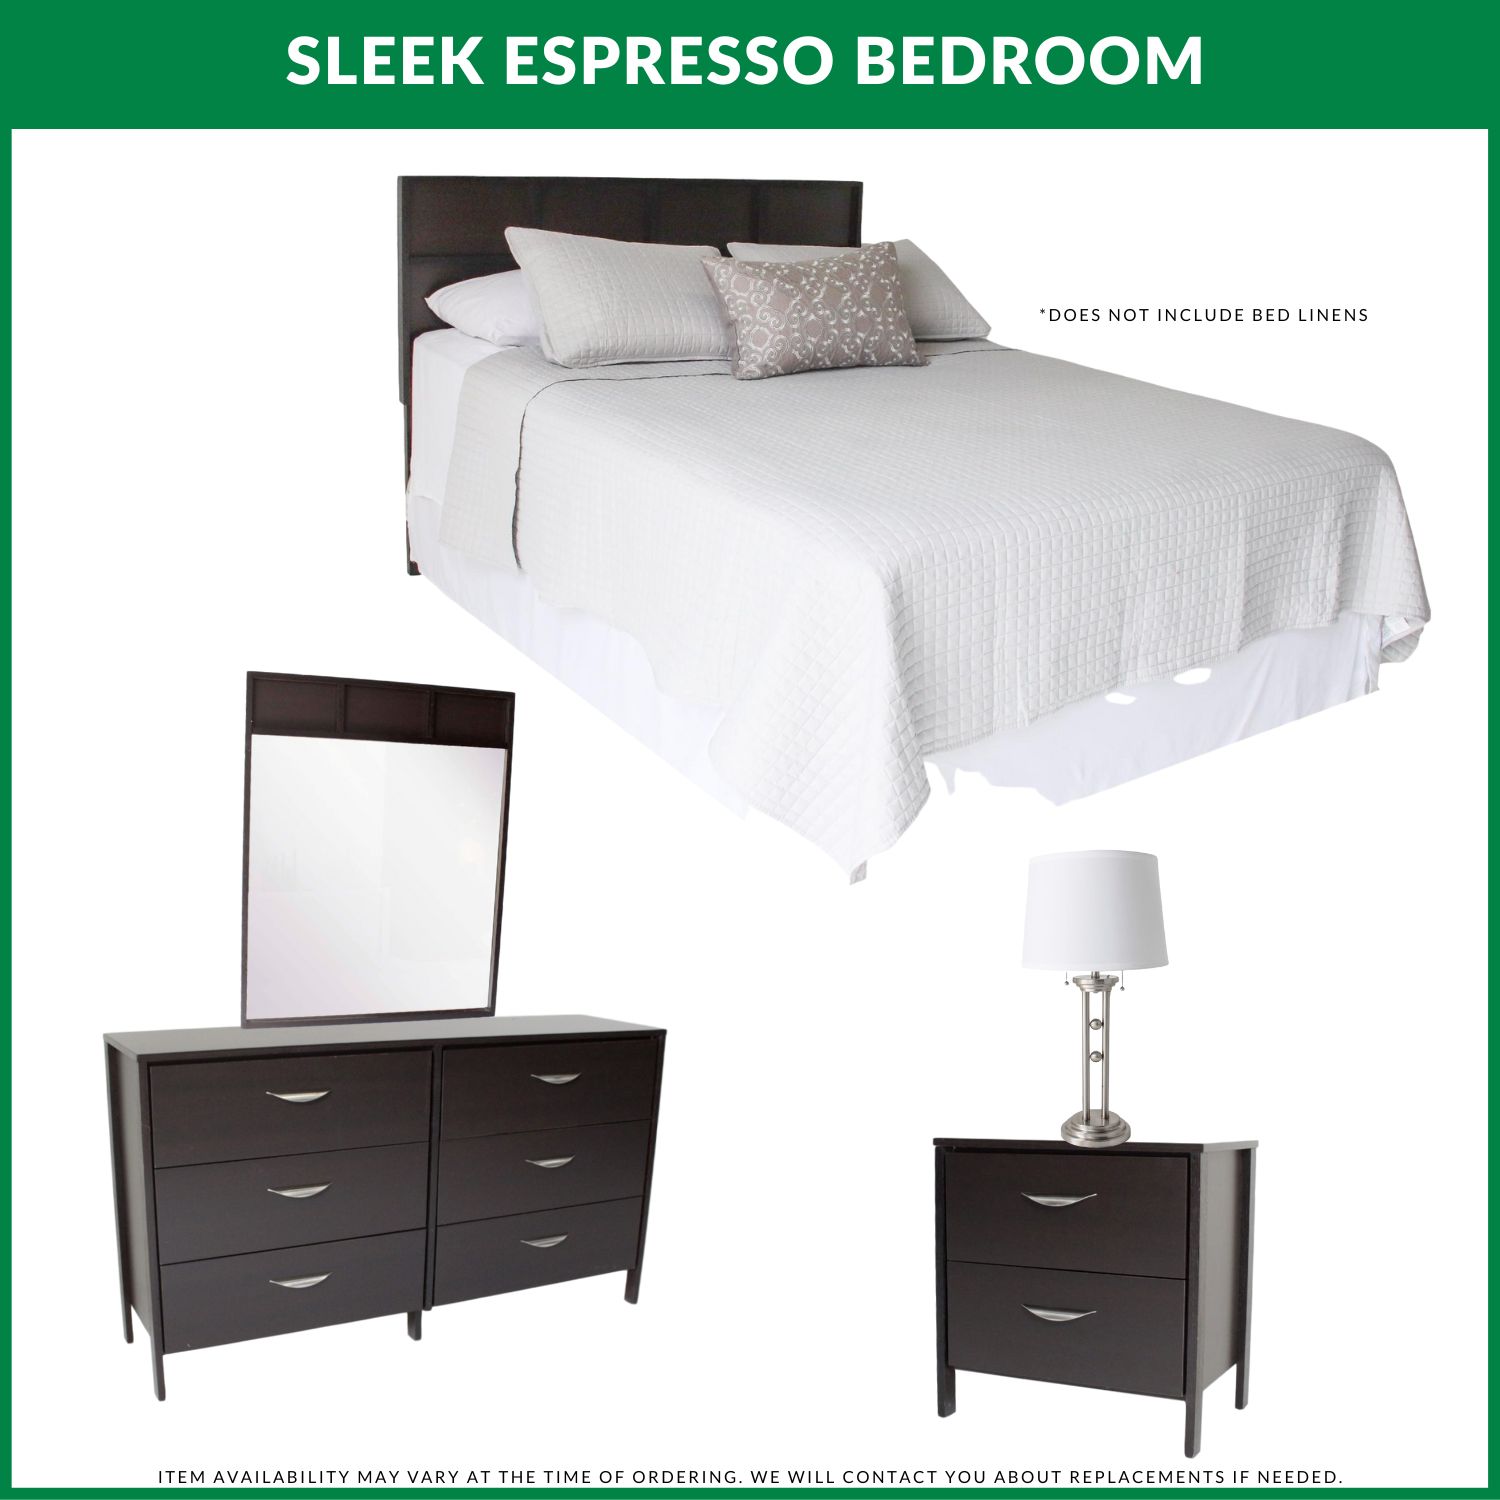 Sleek Espresso Bedroom